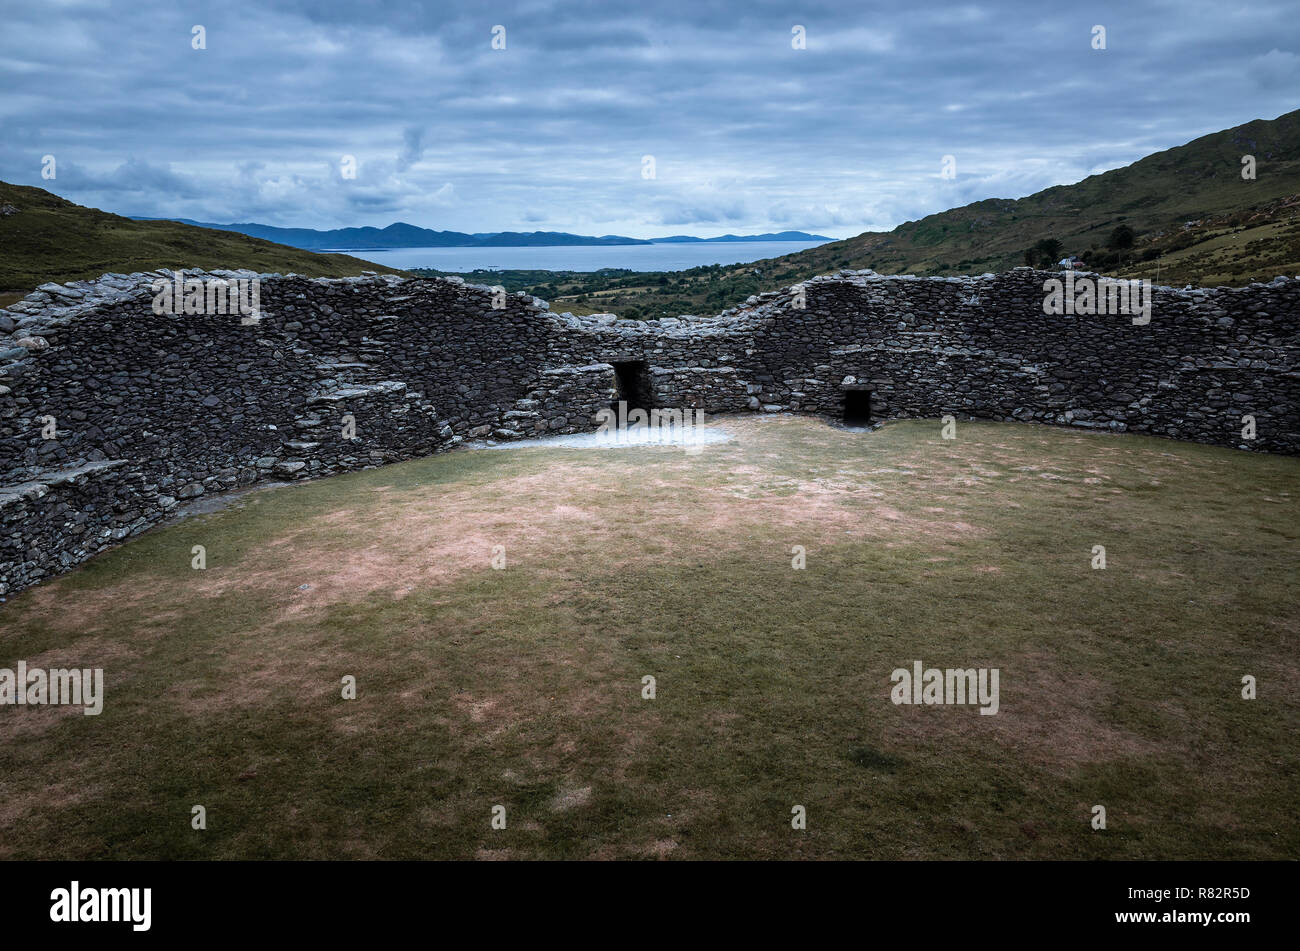 Piedra de Staigue fort, una fortaleza defensiva construida durante la Edad del Hierro en Sneem, Irlanda Foto de stock